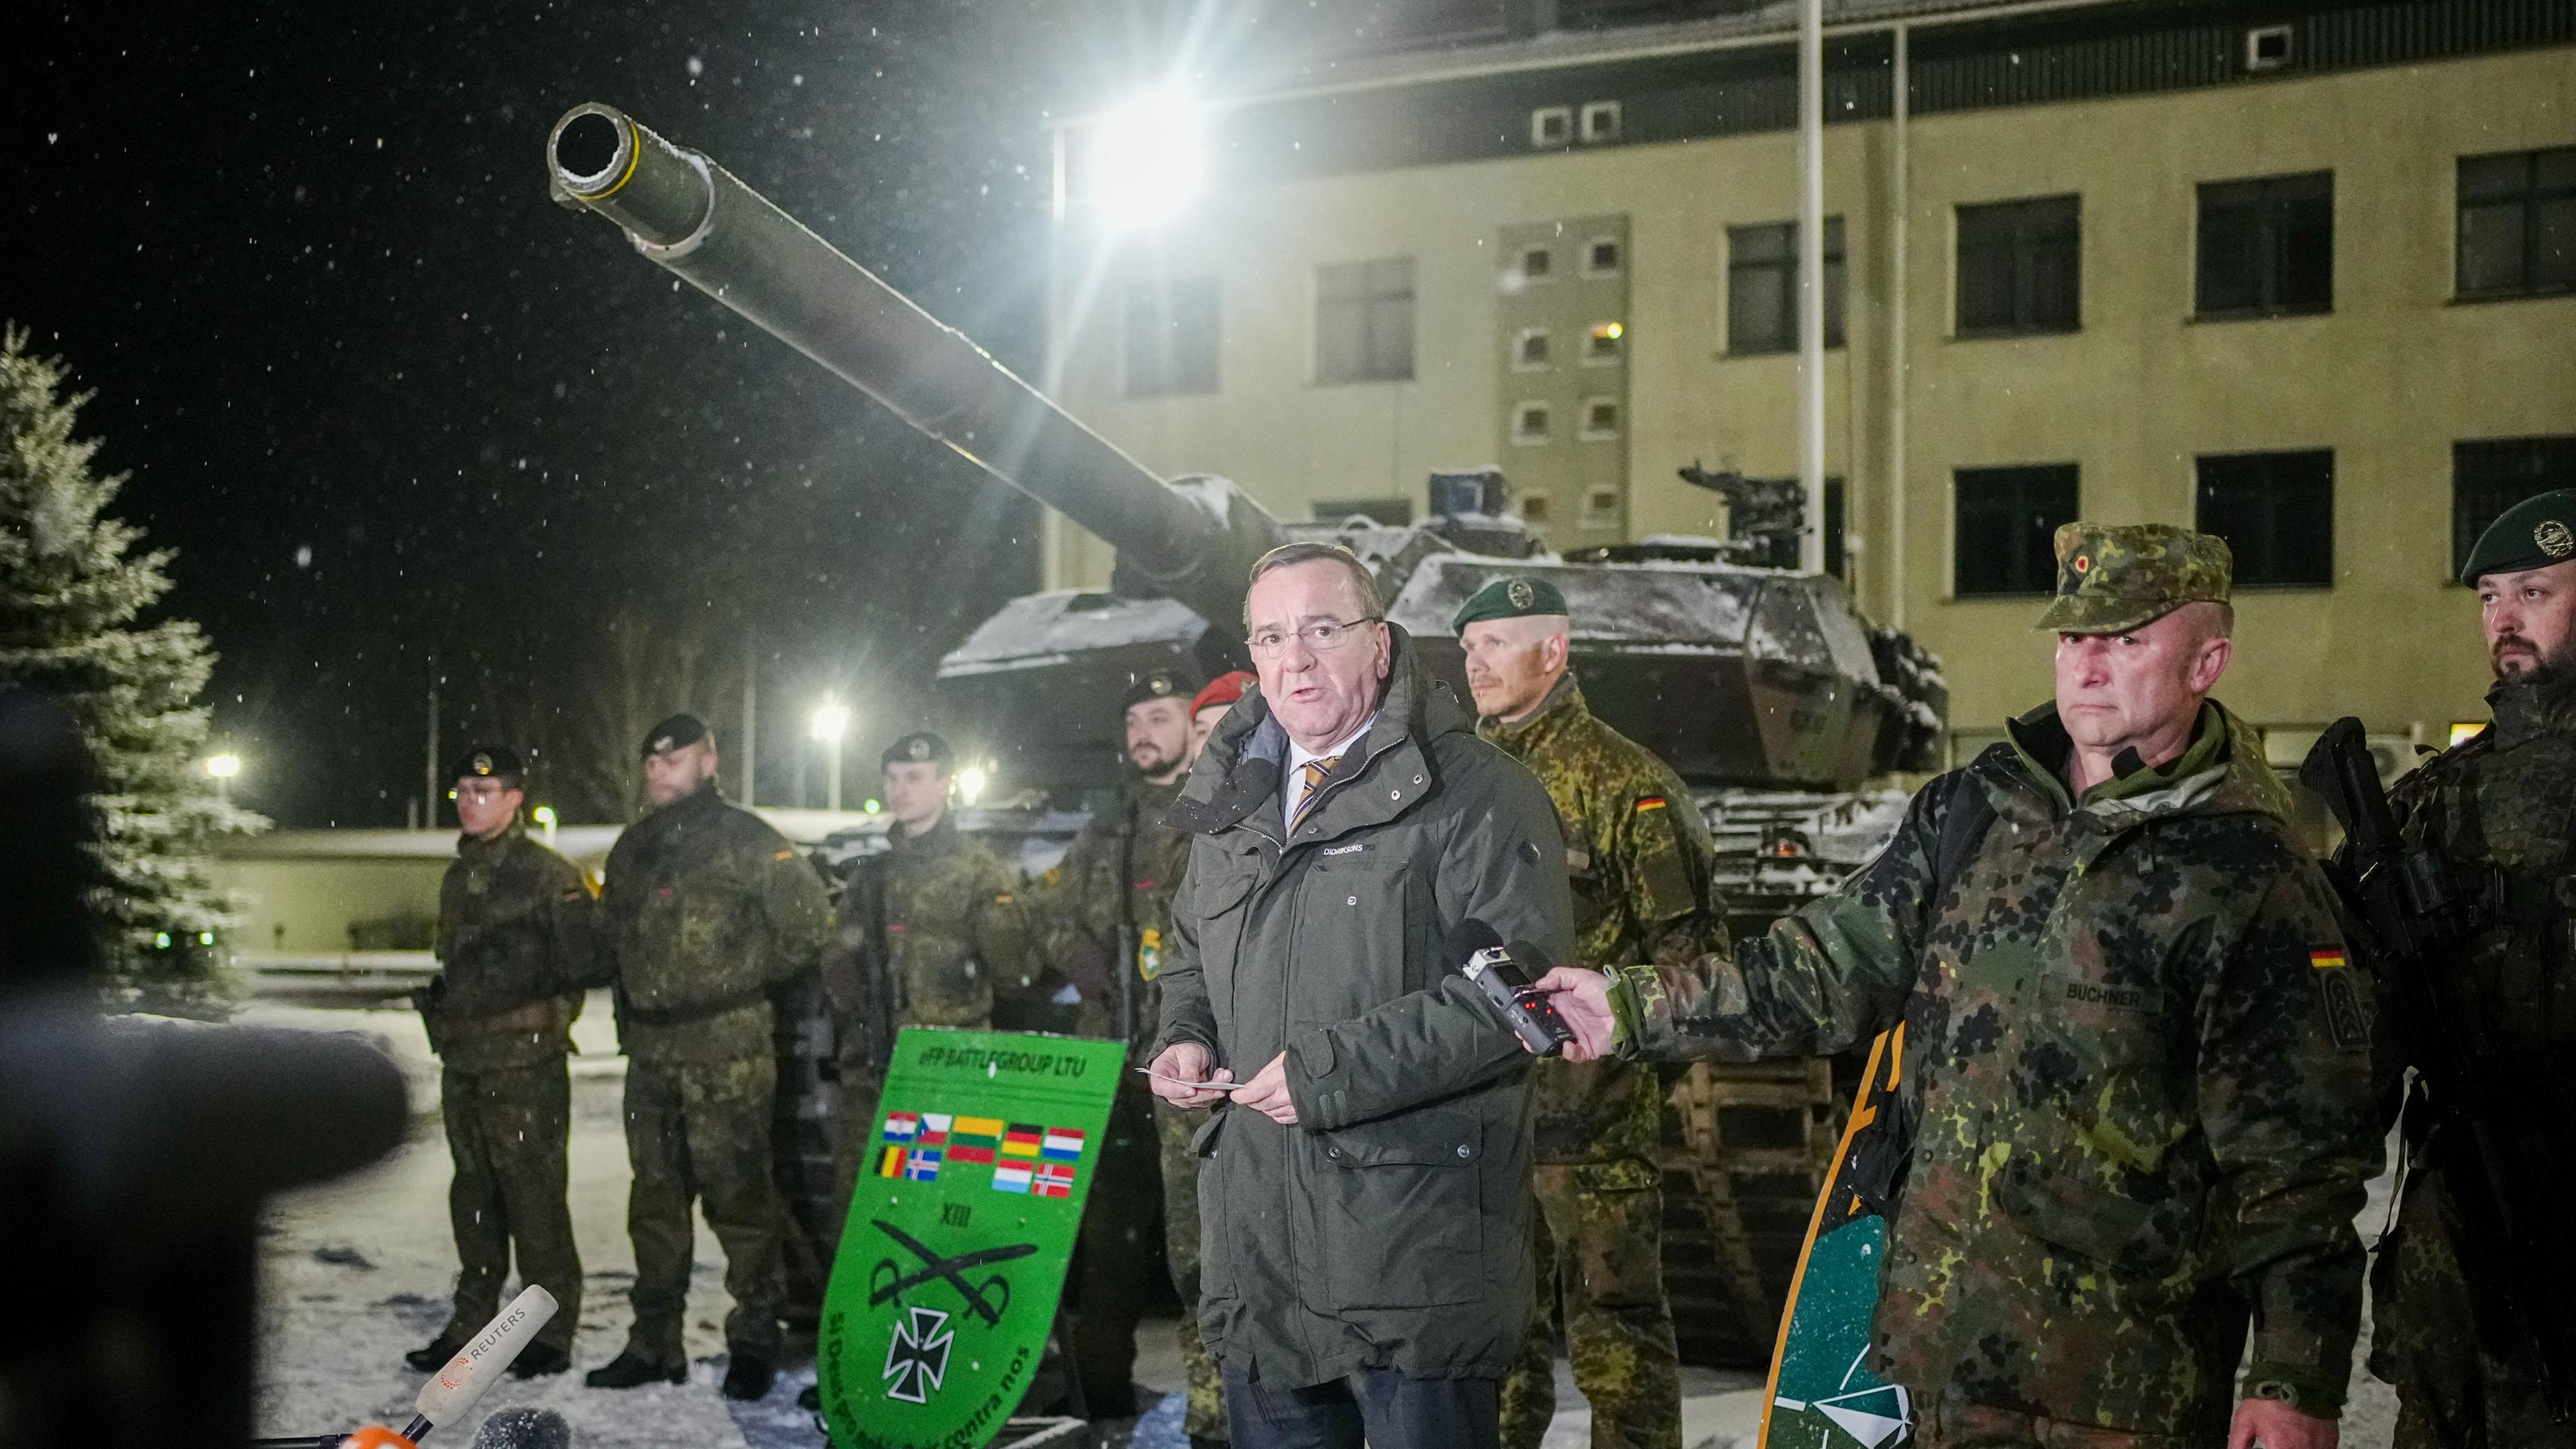 Litauen, Rukla: Boris Pistorius (SPD), Bundesminister der Verteidigung, spricht neben Bundeswehrsoldaten des deutschen Einsatzkontingents Enhanced Forward Presence in Rukla bei dem Besuch des Nato-Partners Litauen an einem Leoprd 2 Panzer zu den Journalisten. 